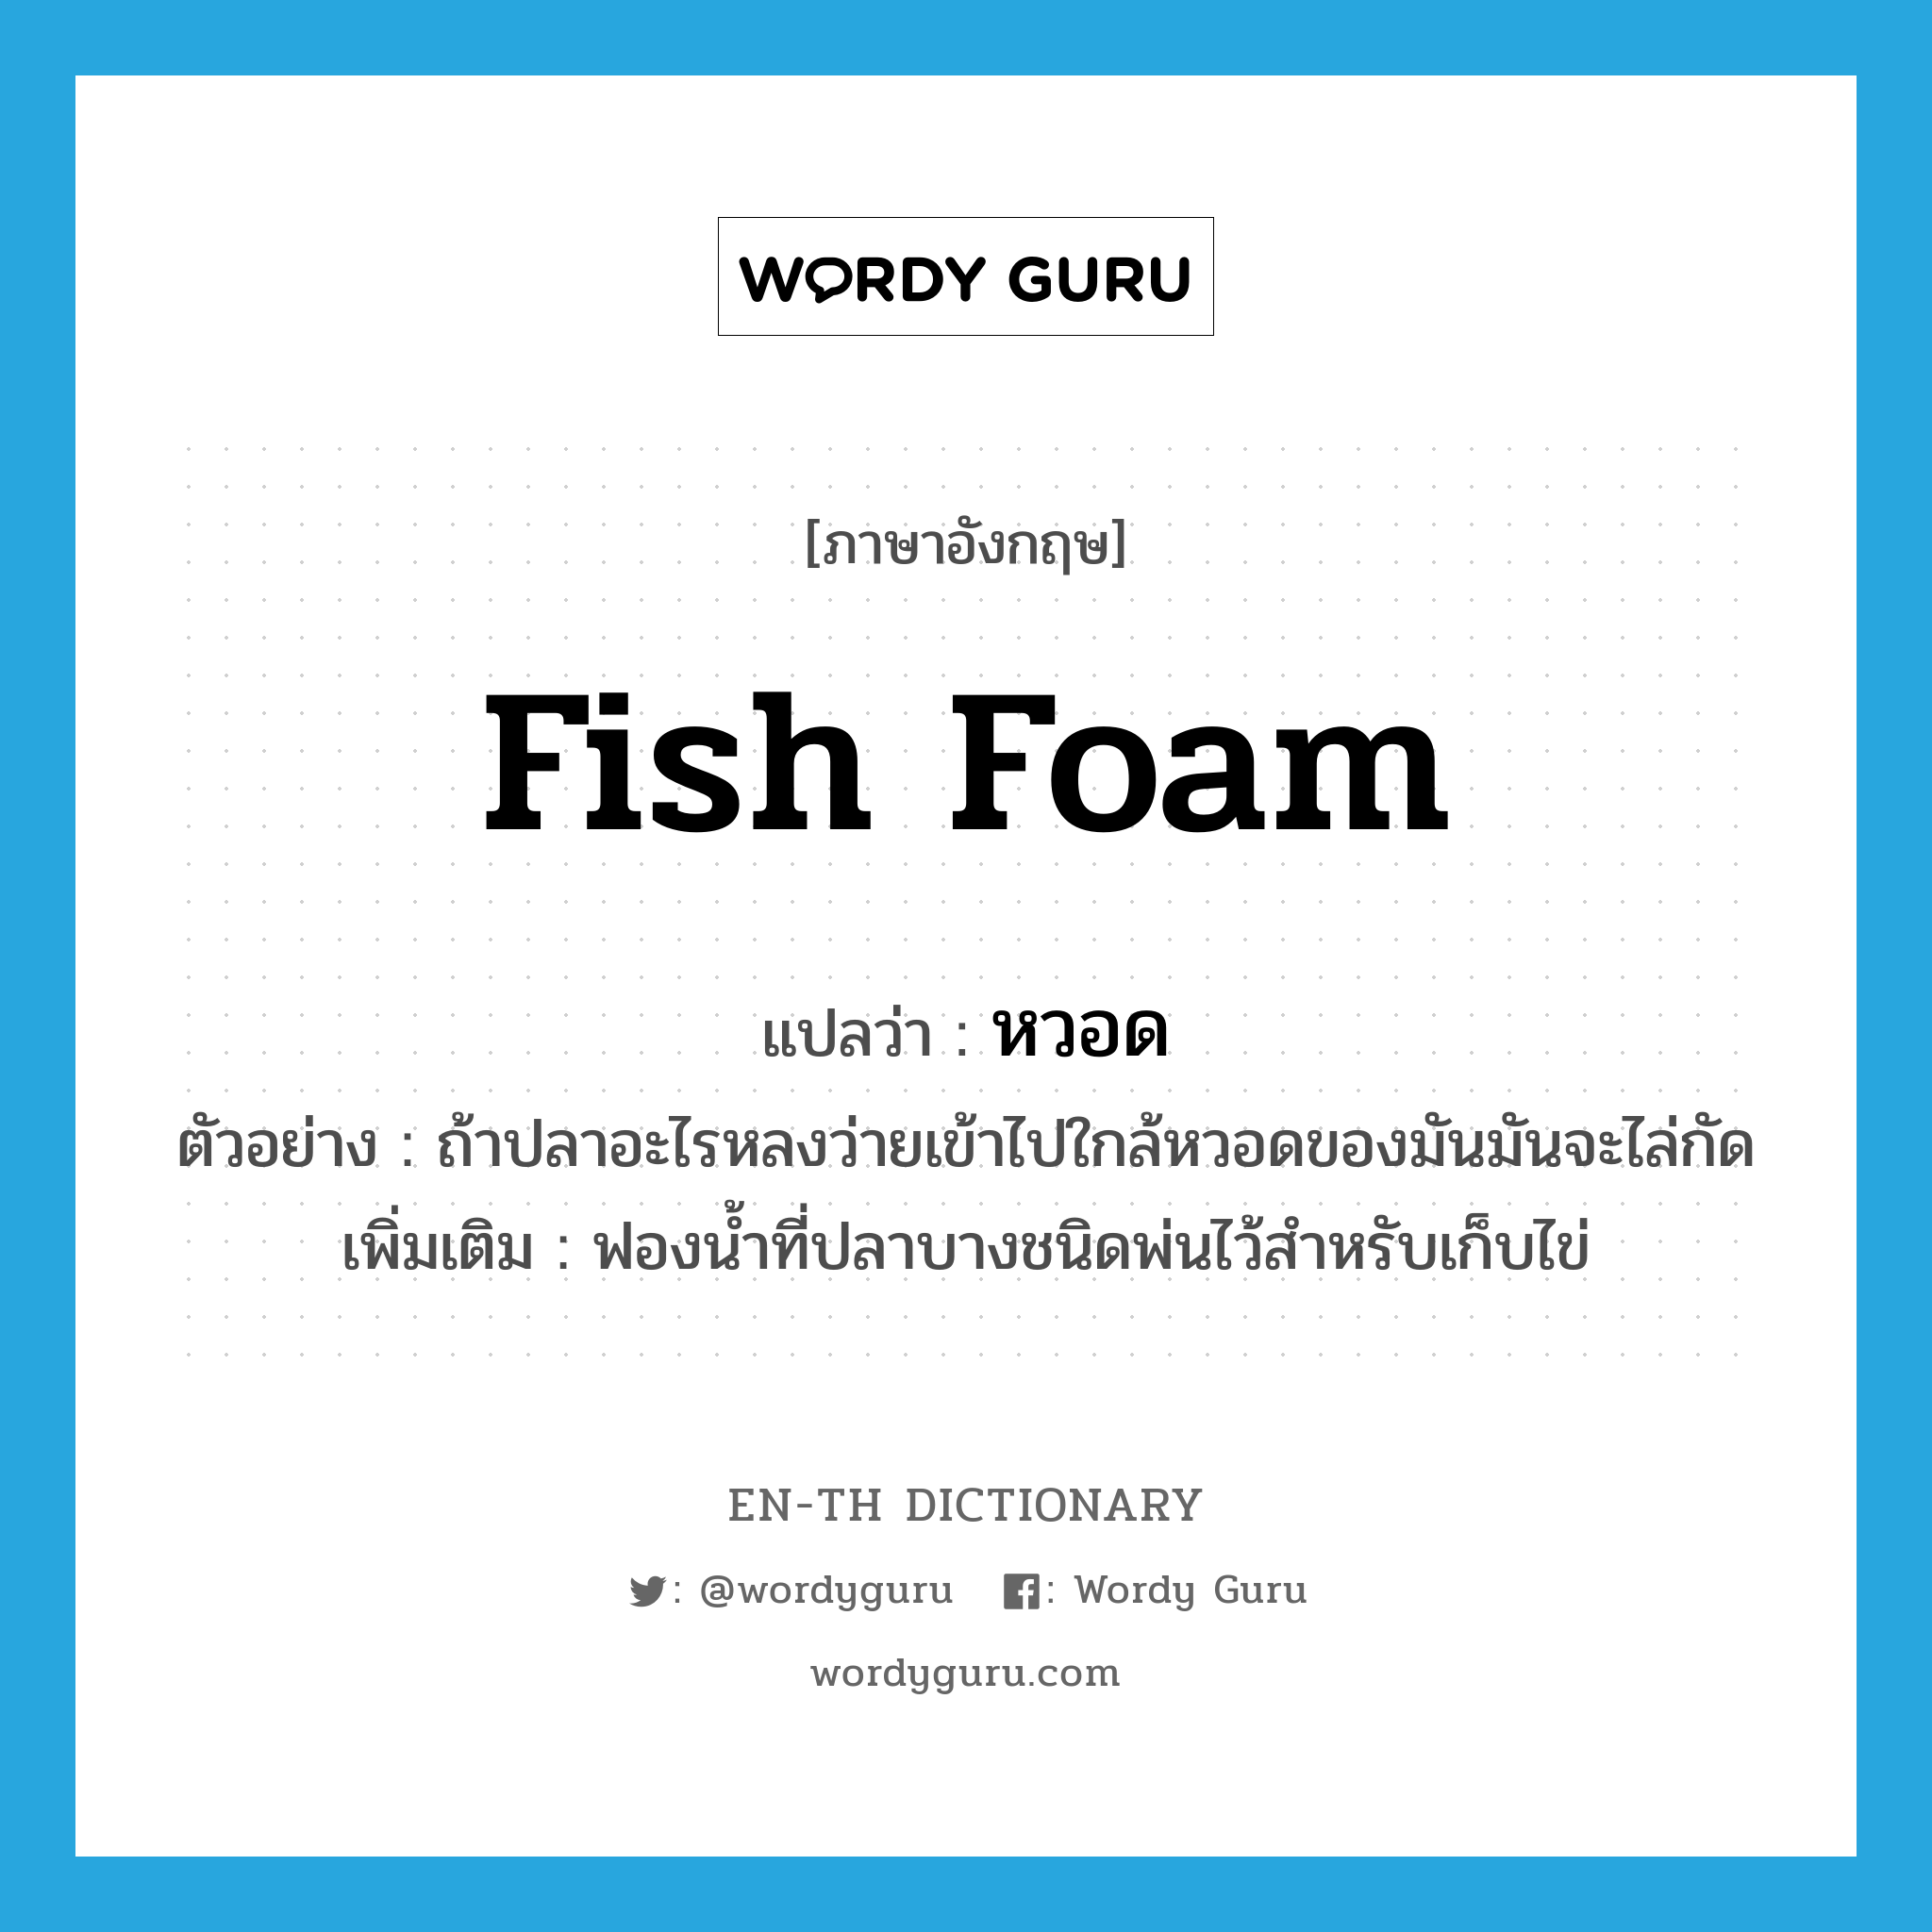 fish foam แปลว่า?, คำศัพท์ภาษาอังกฤษ fish foam แปลว่า หวอด ประเภท N ตัวอย่าง ถ้าปลาอะไรหลงว่ายเข้าไปใกล้หวอดของมันมันจะไล่กัด เพิ่มเติม ฟองน้ำที่ปลาบางชนิดพ่นไว้สำหรับเก็บไข่ หมวด N